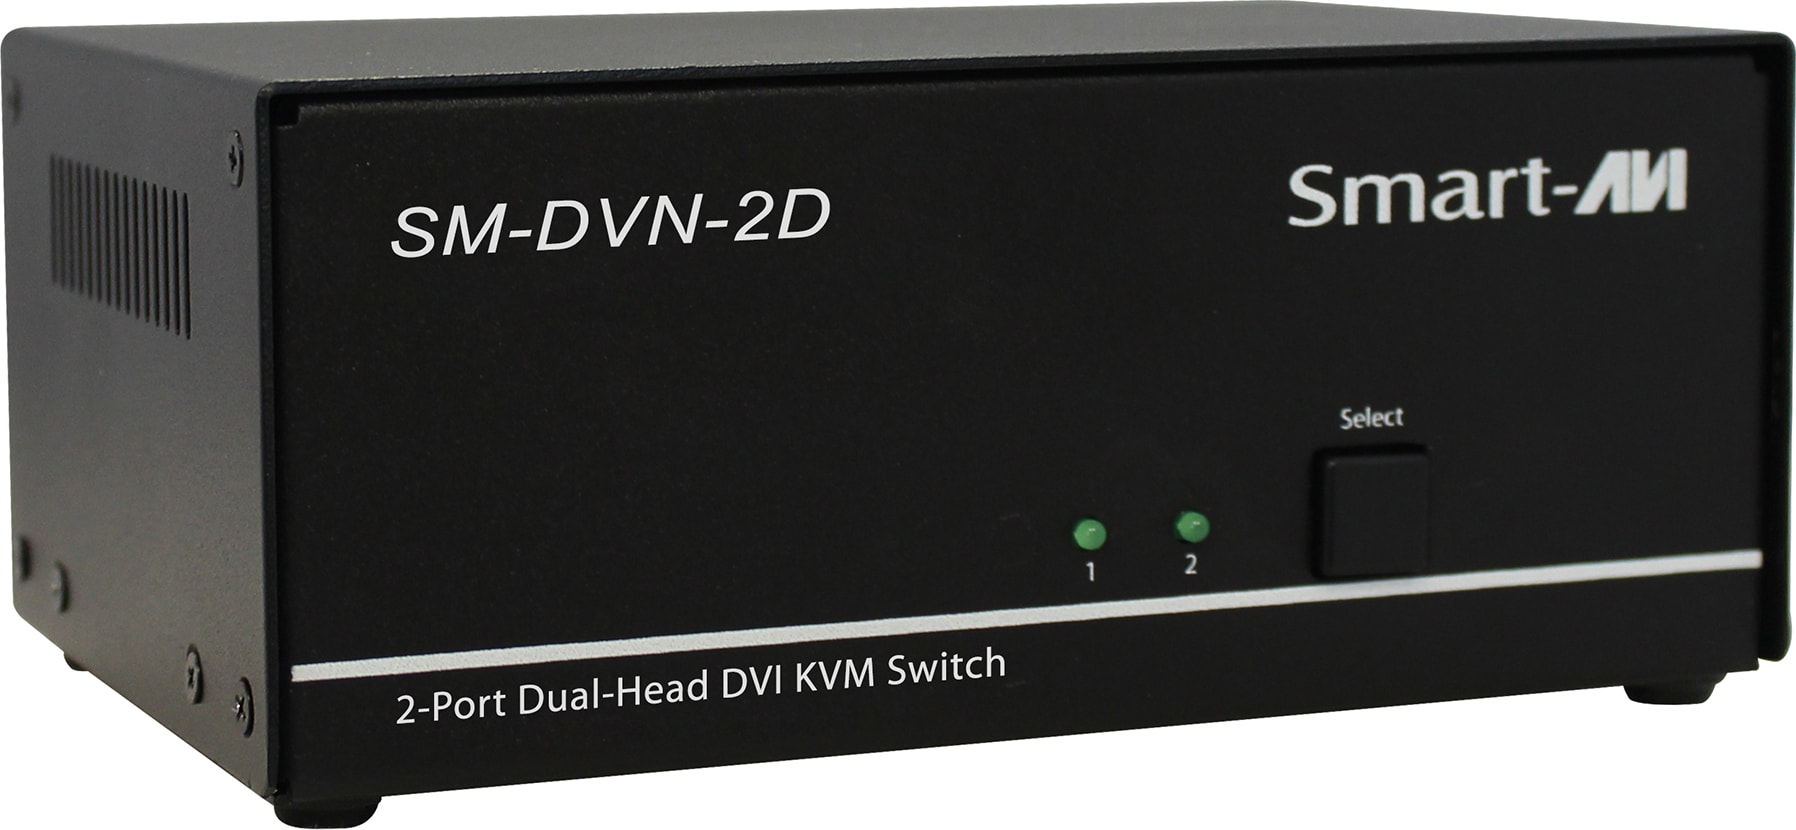 Smart-AVI SM-DVN-2D